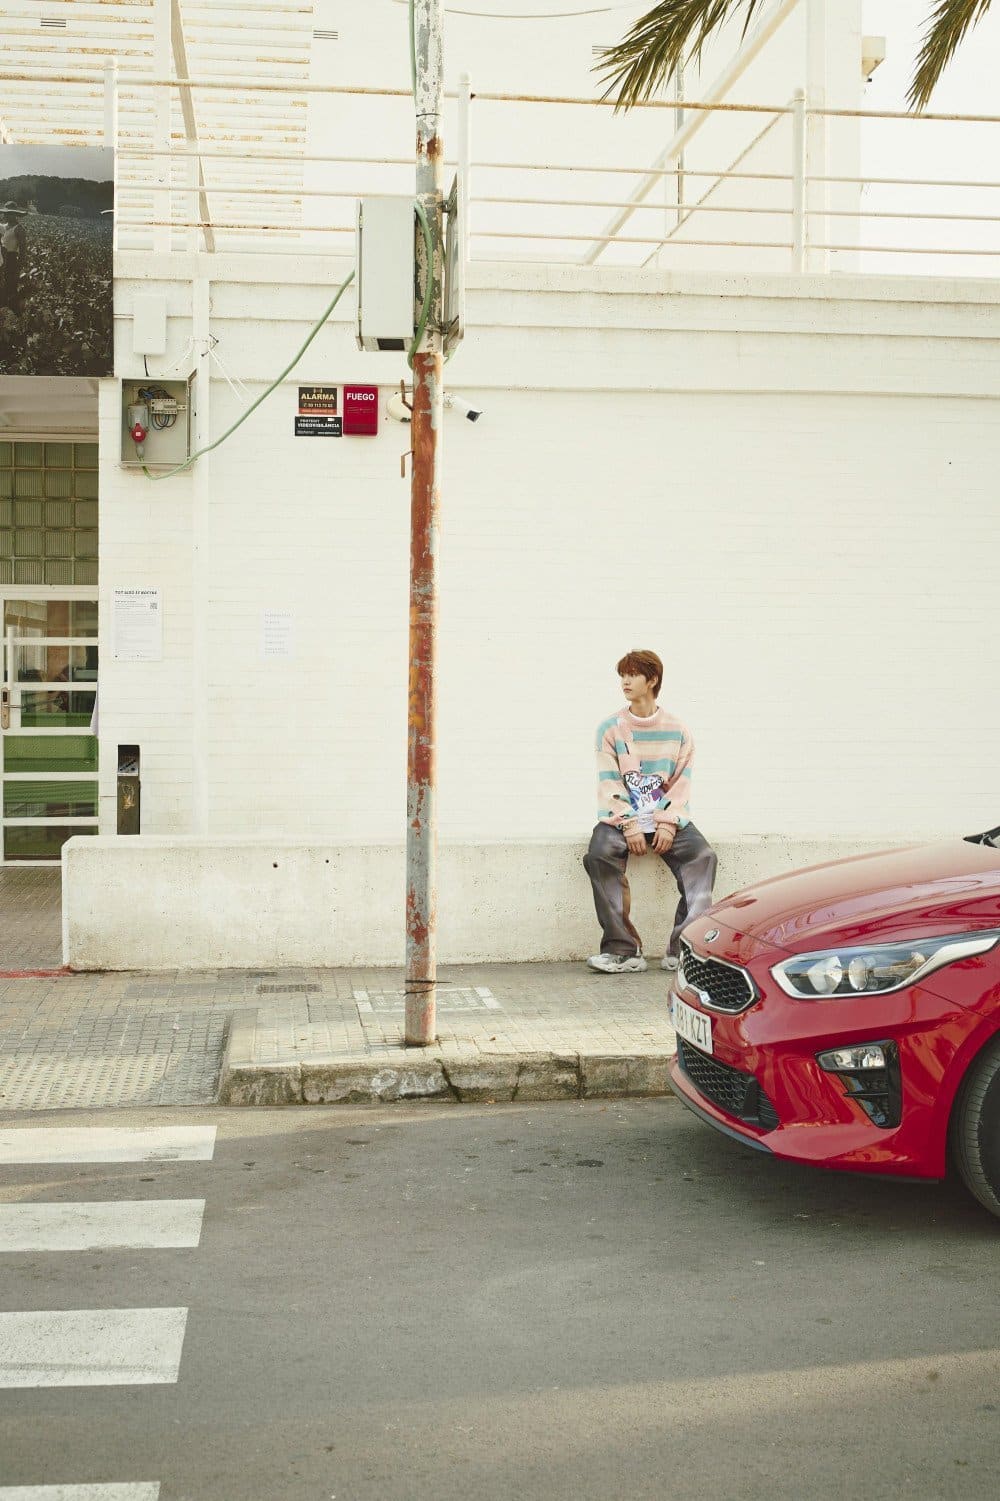 NCT WISH очаровывают новыми тизер-фото к дебютному синглу 'WISH'